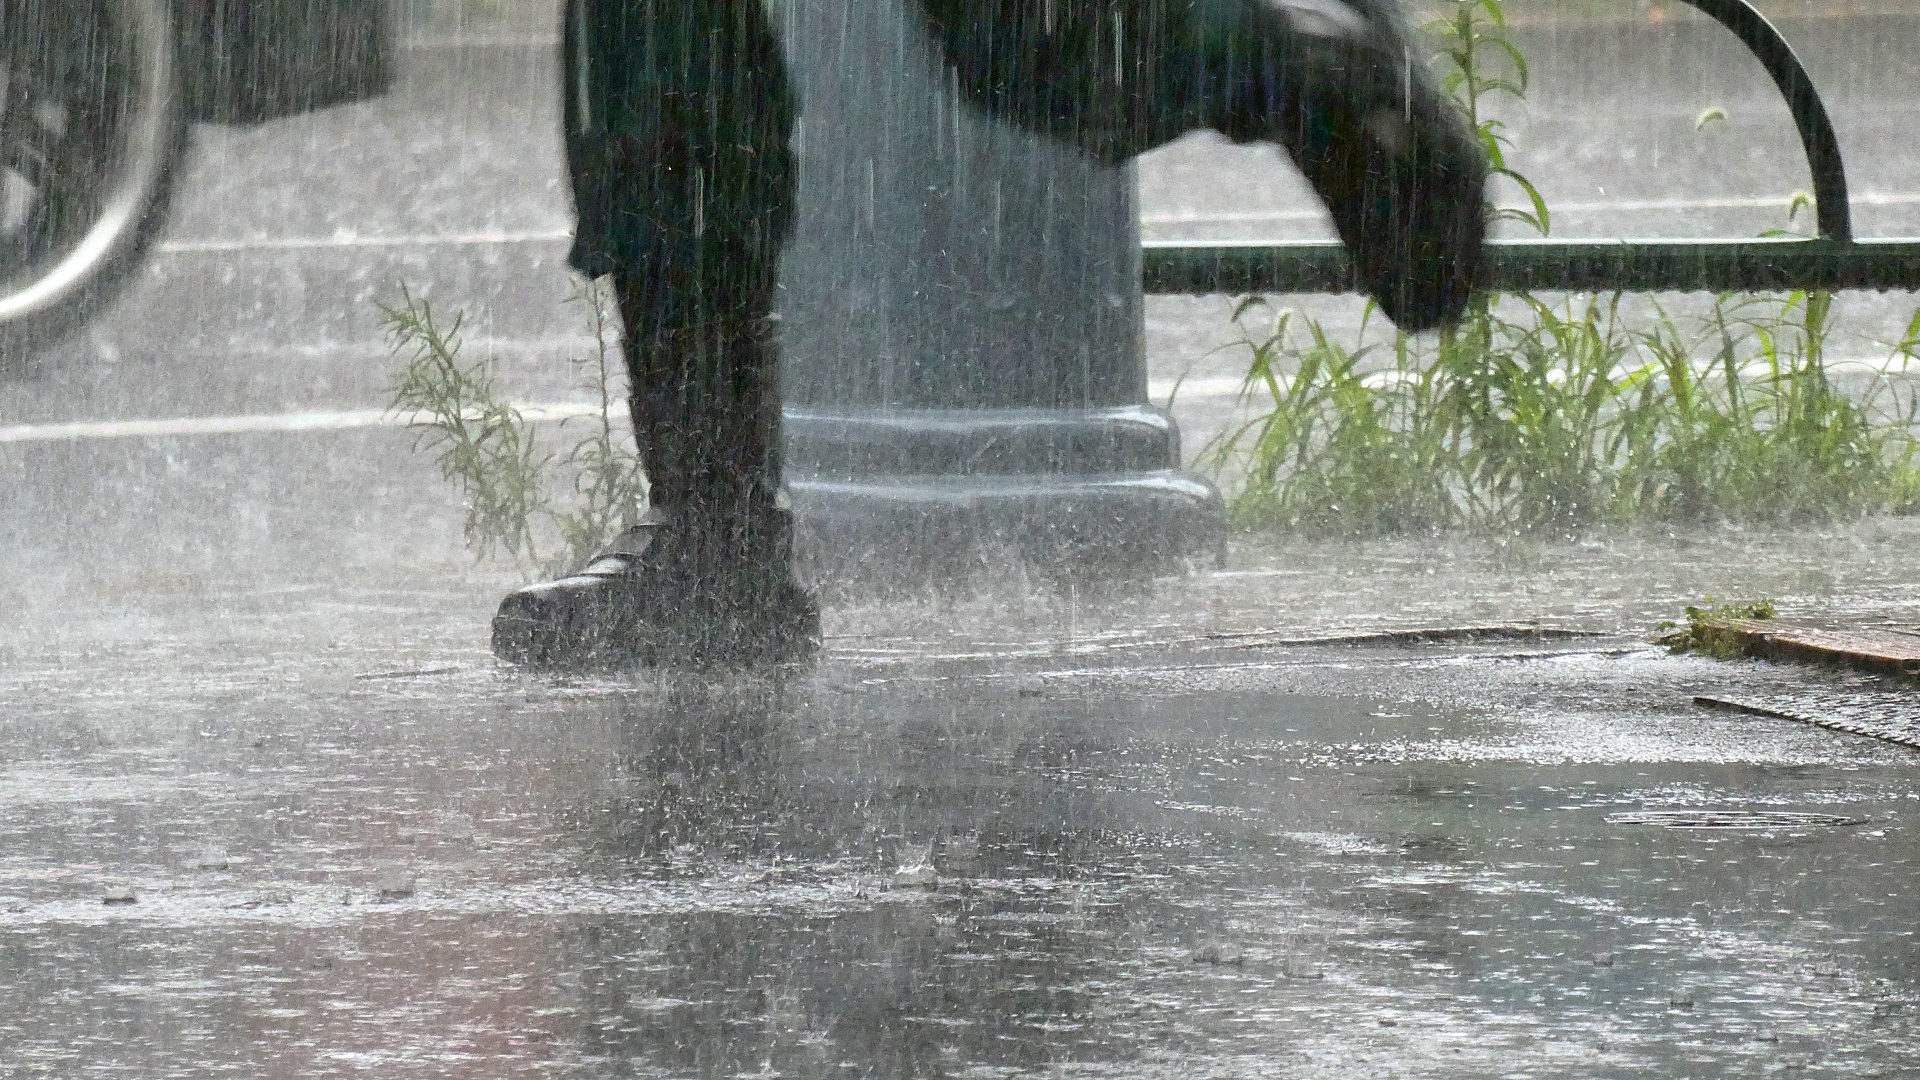 ゲリラ雷雨の中、歩道を歩いている男性の足元が映っている写真です。靴もズボンもずぶぬれの様子です